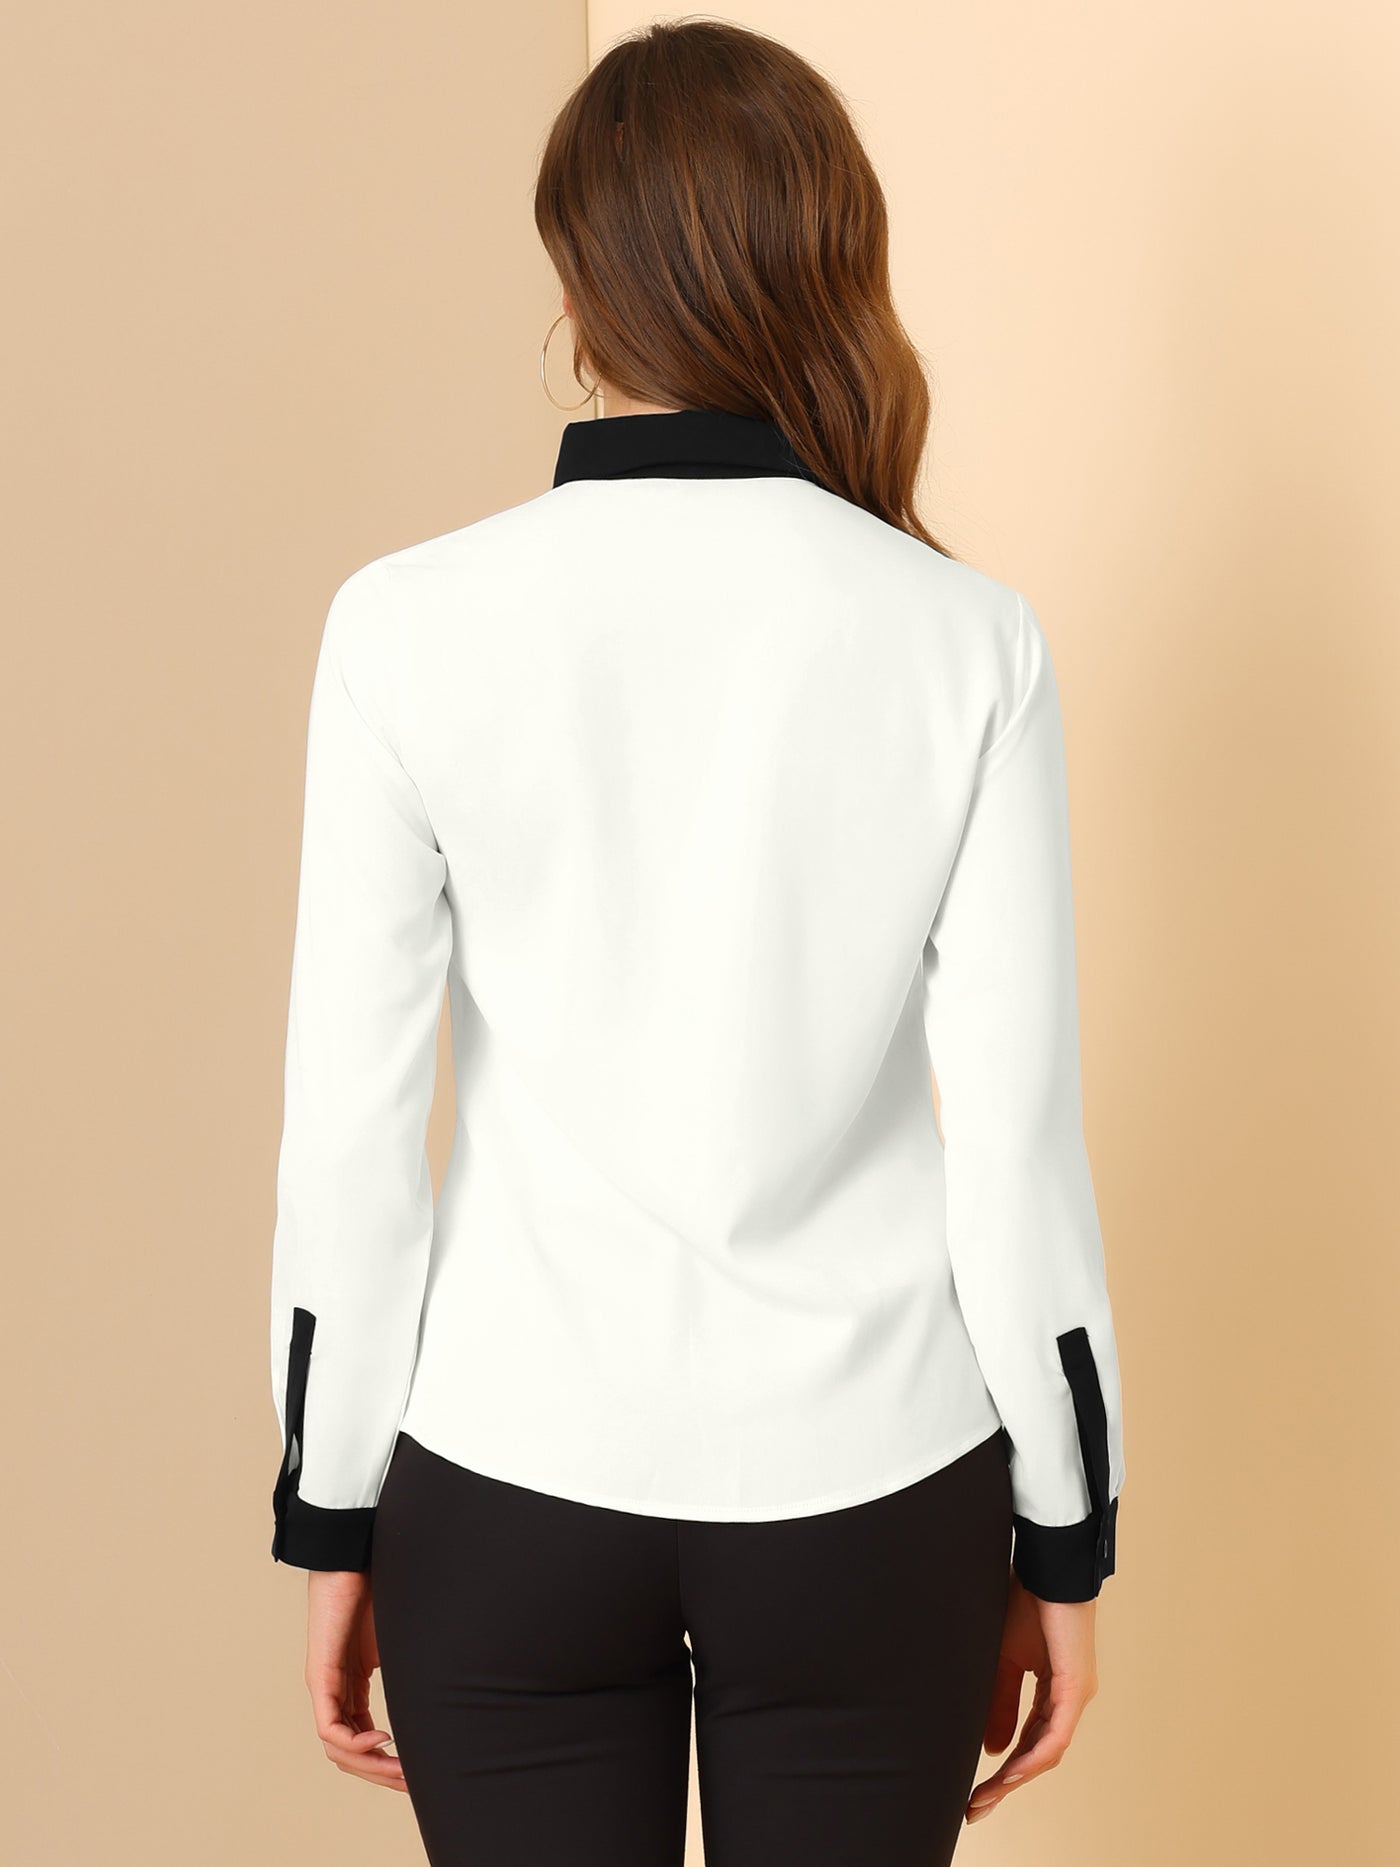 Allegra K Contrast Collar Shirt Chiffon Long Sleeve Work Office Blouse